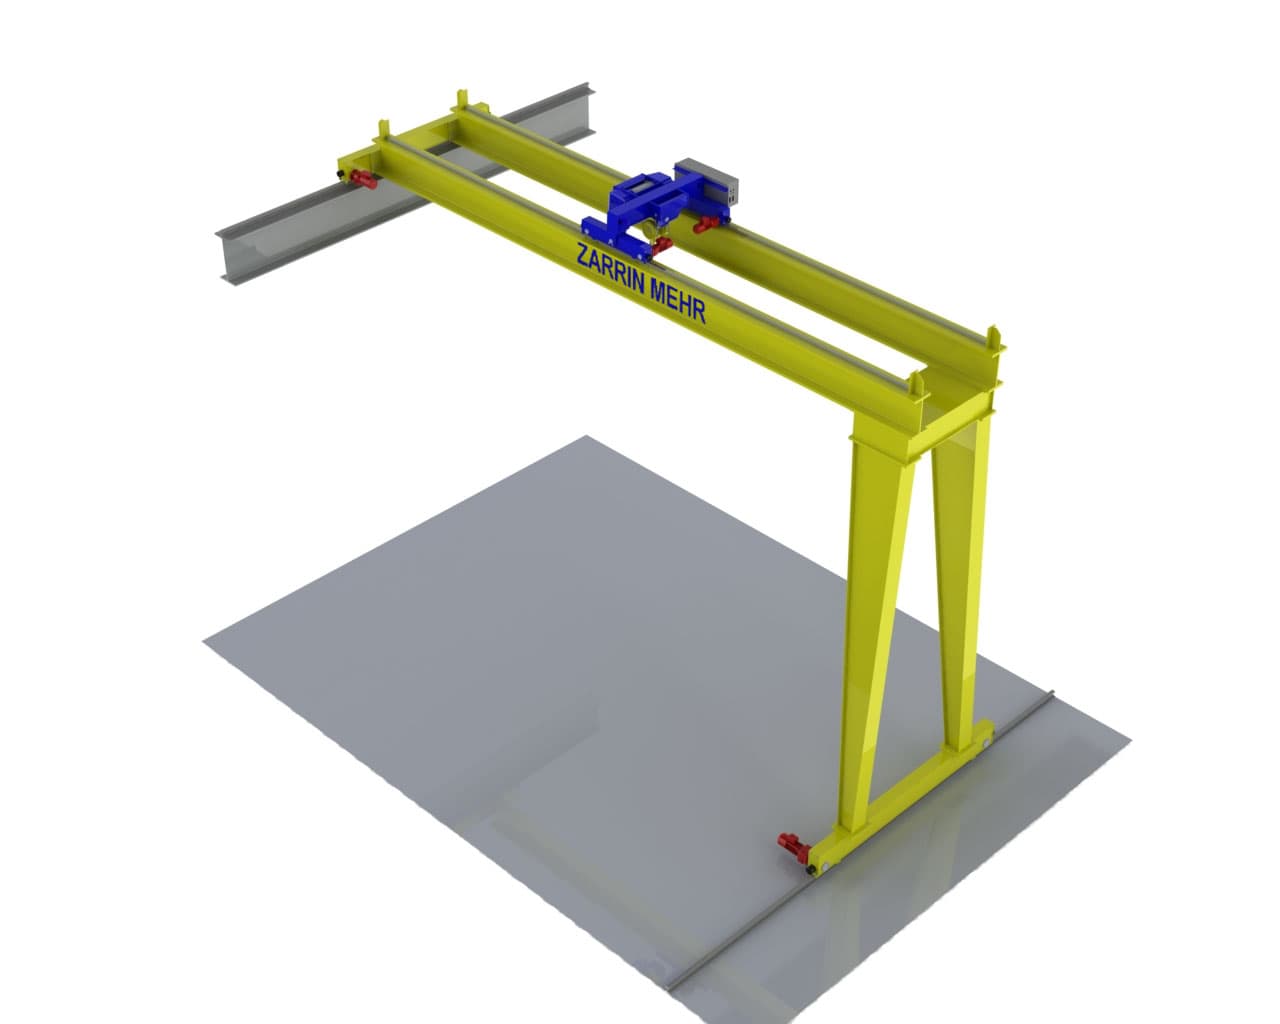 3D model of ZARRIN MEHR's Double Girder Semi-Gantry Crane, designed for heavy-duty material handling in various industrial settings.